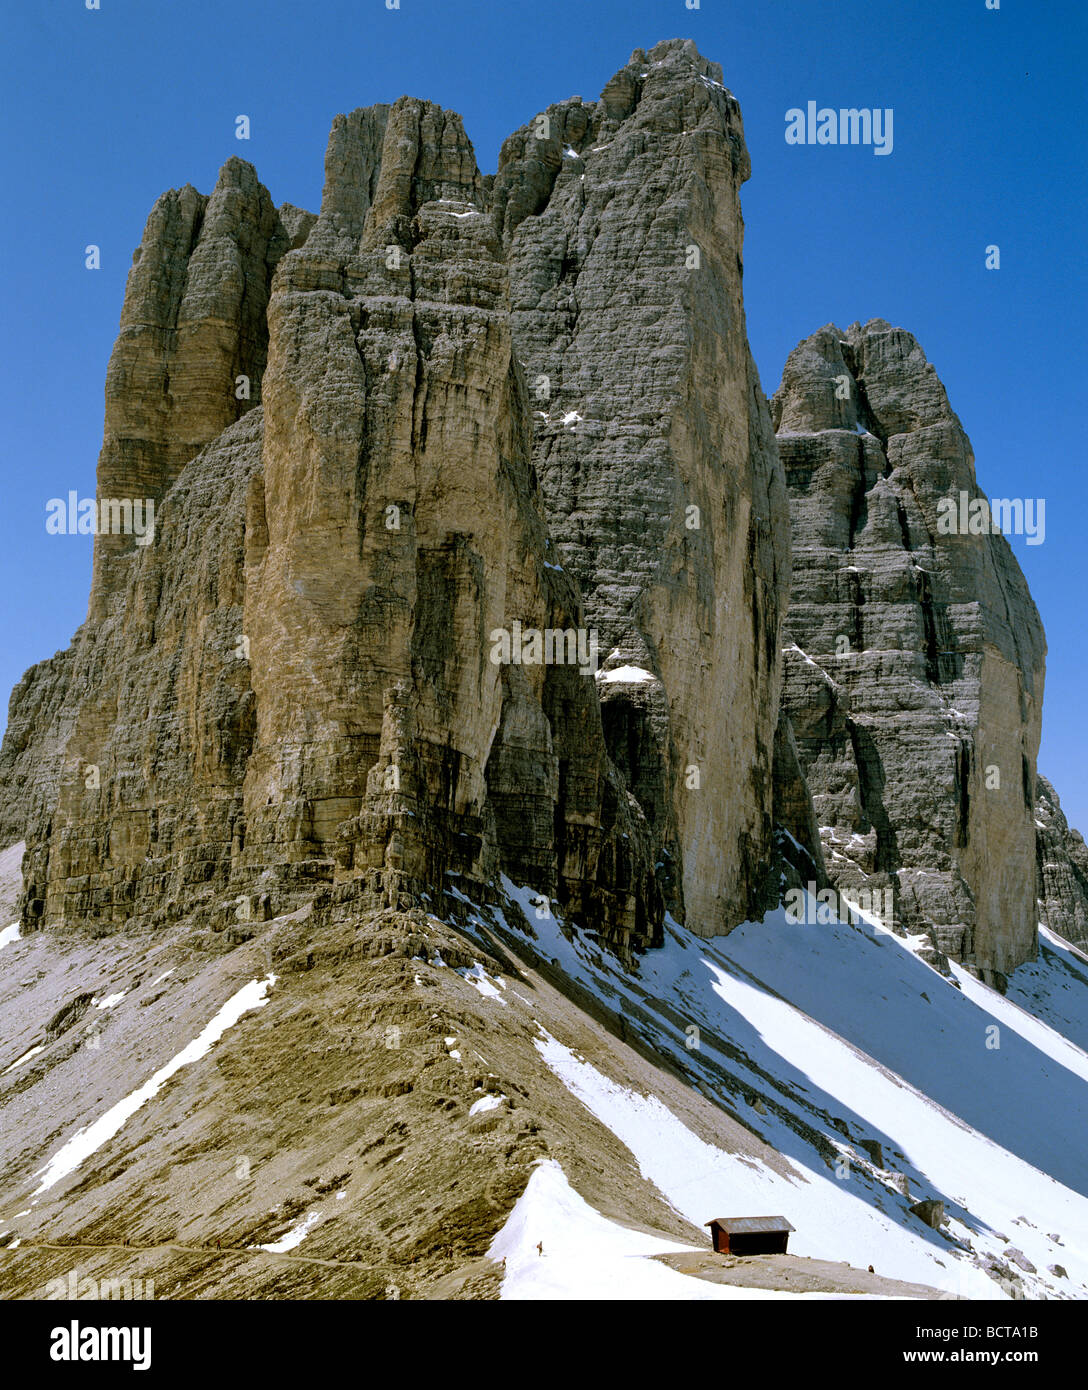 Drei Zinnen montagne, Dolomiti di Sesto, Belluno, Alto Adige, Italia, Europa Foto Stock